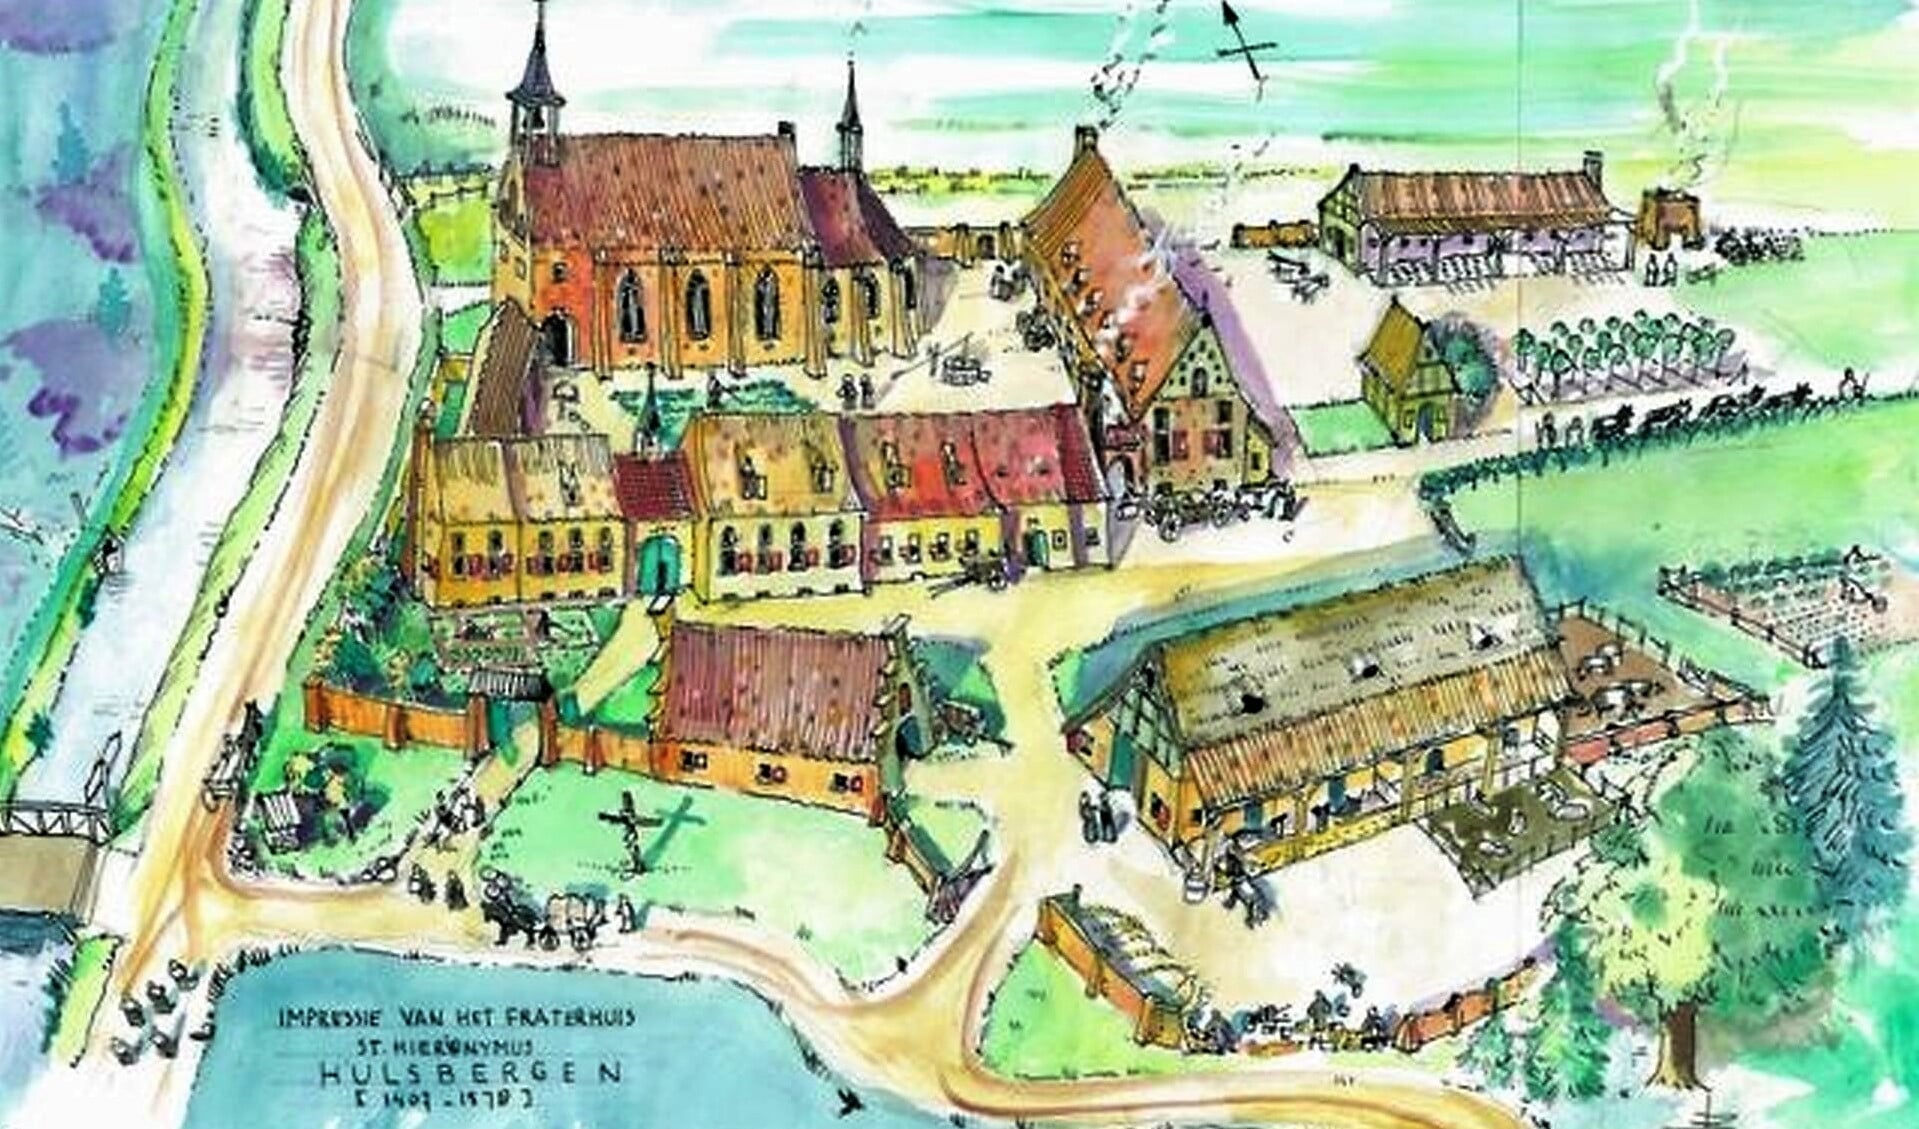 Illustratie: een impressie van het klooster Hulsbergen getekend door Bernard Bos uit Heerde. 